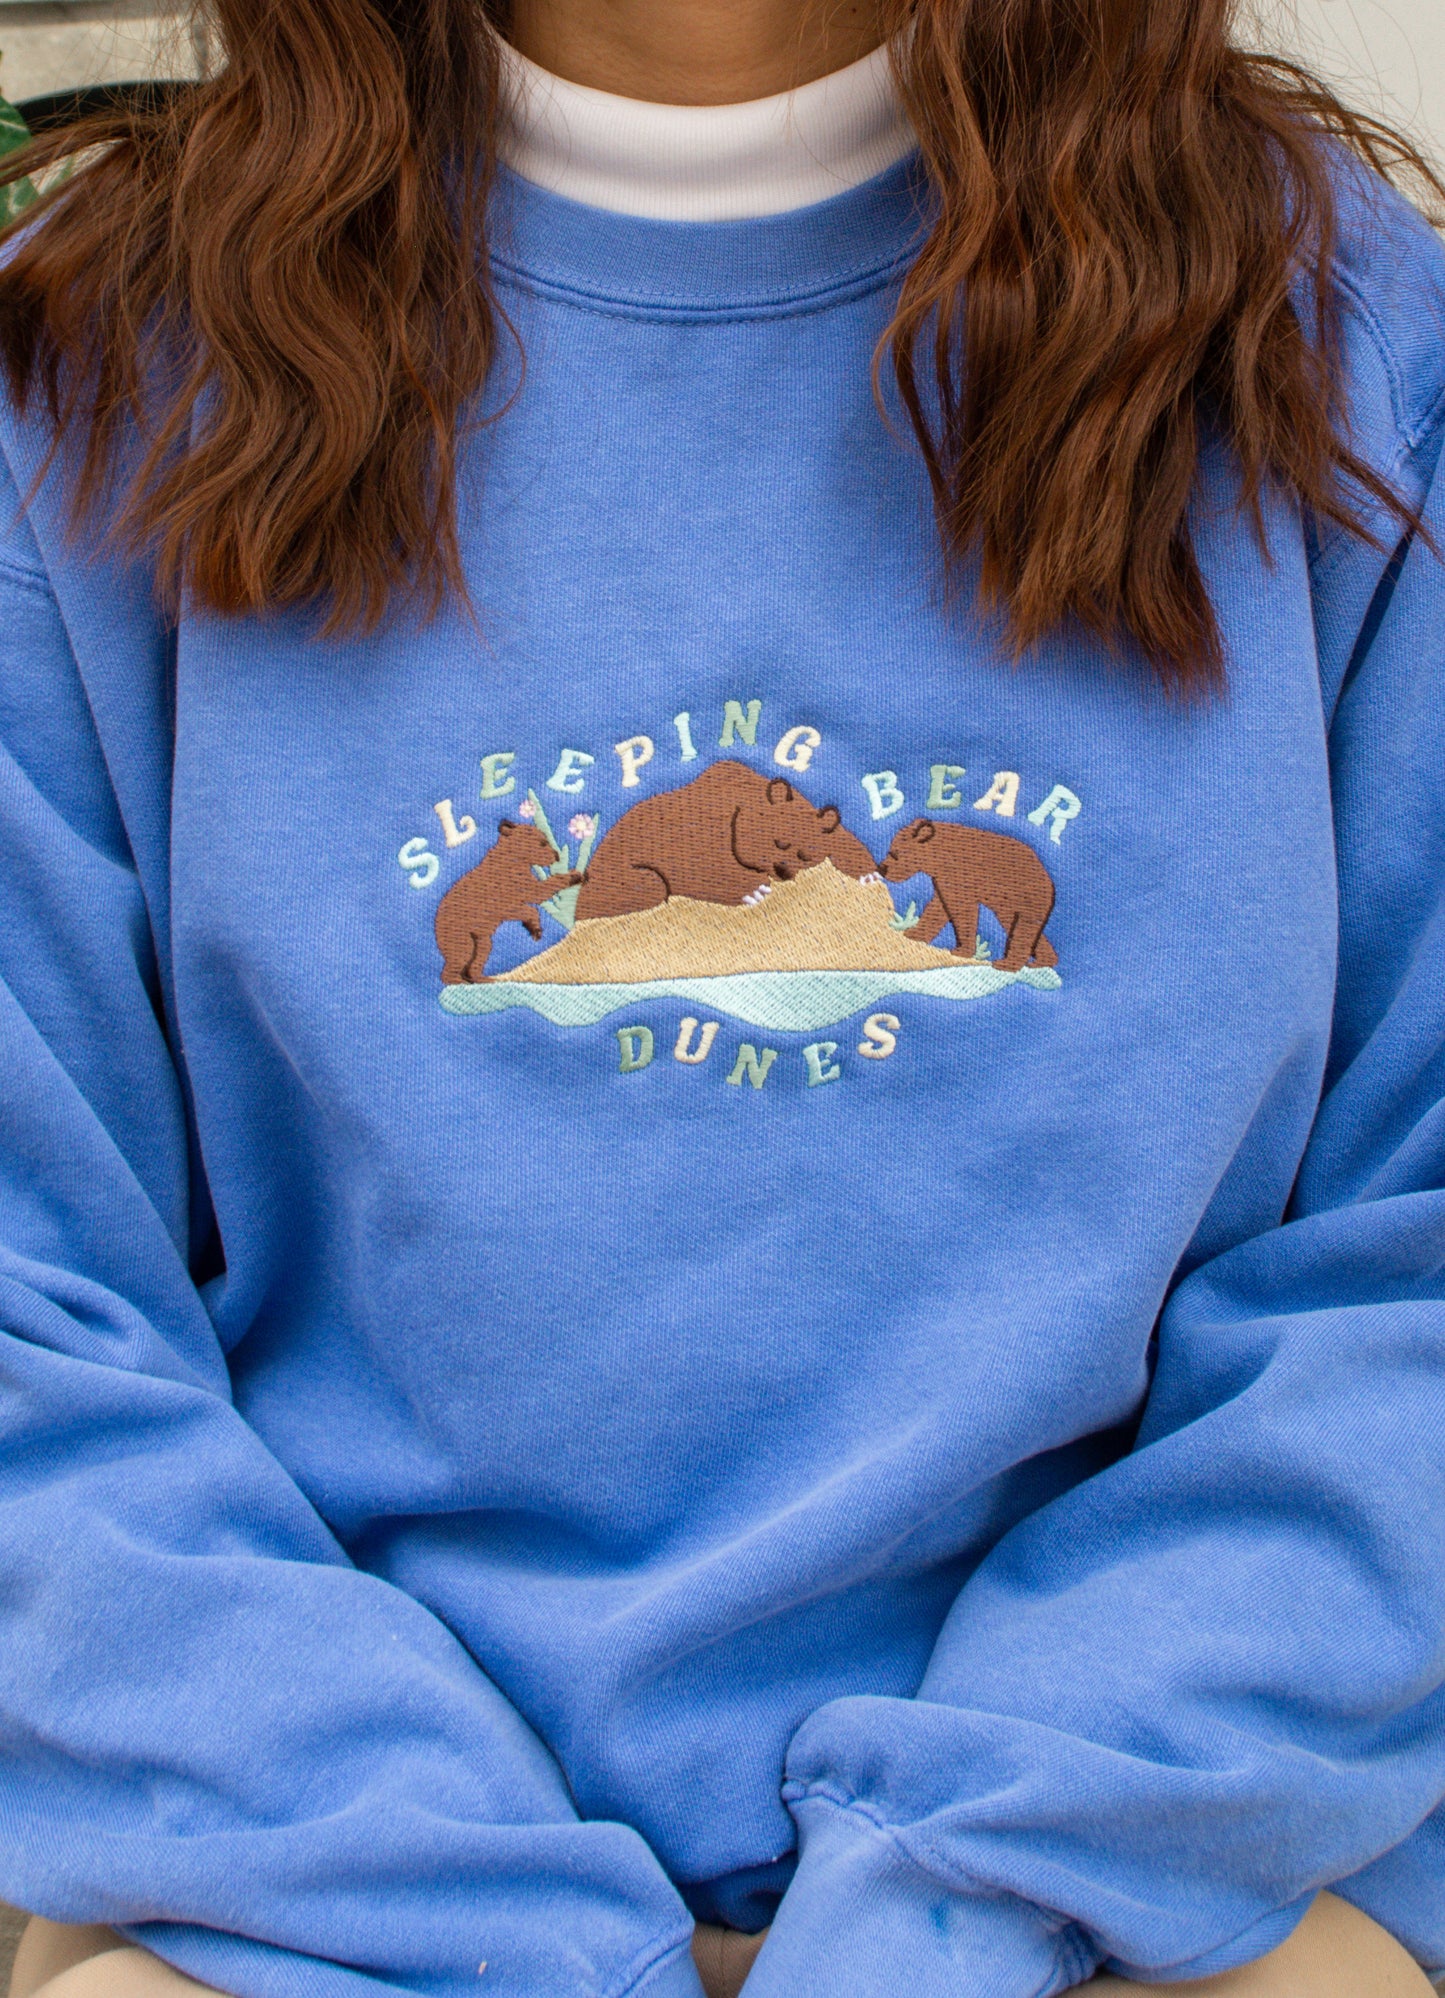 Sleeping Bear Dunes National Lakeshore Sweatshirt